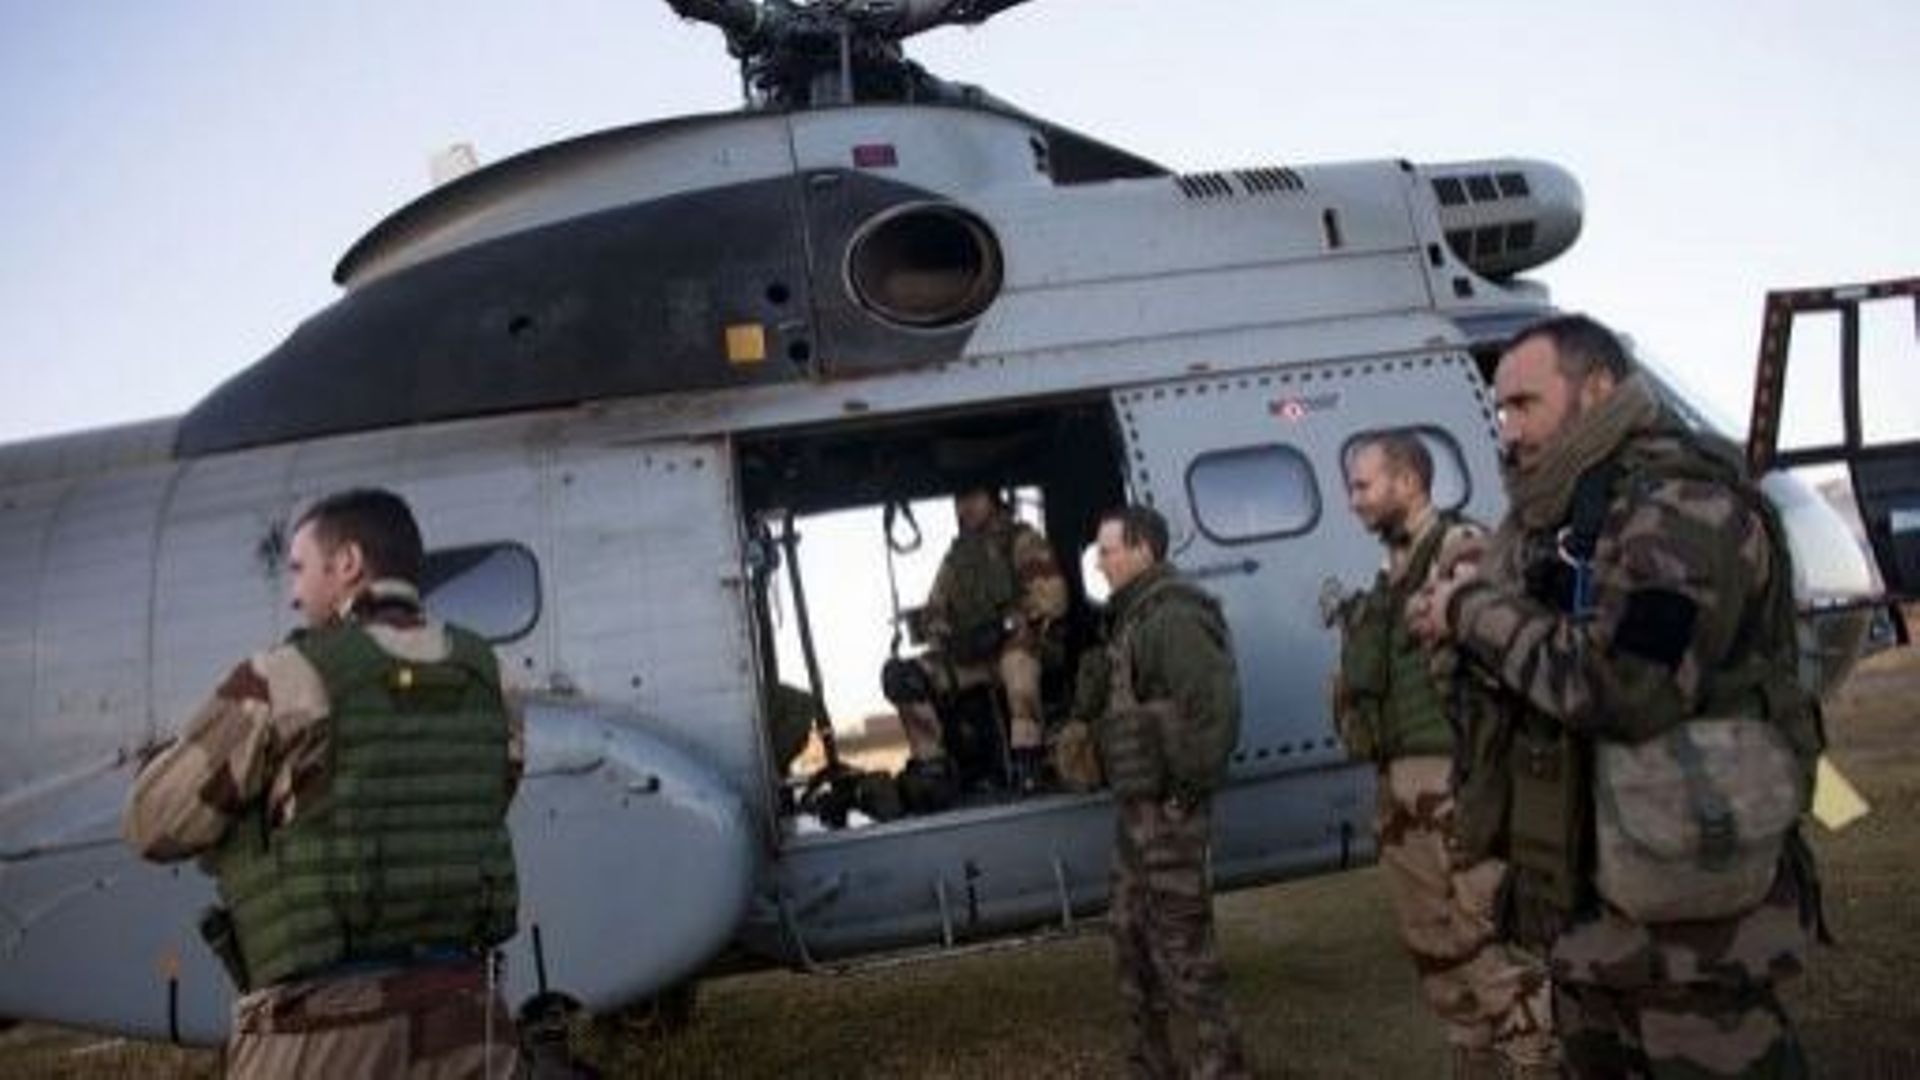 Des soldats français embarquent dans un hélicoptère pour rejoindre le nord du Mali, le 21 janvier 2013